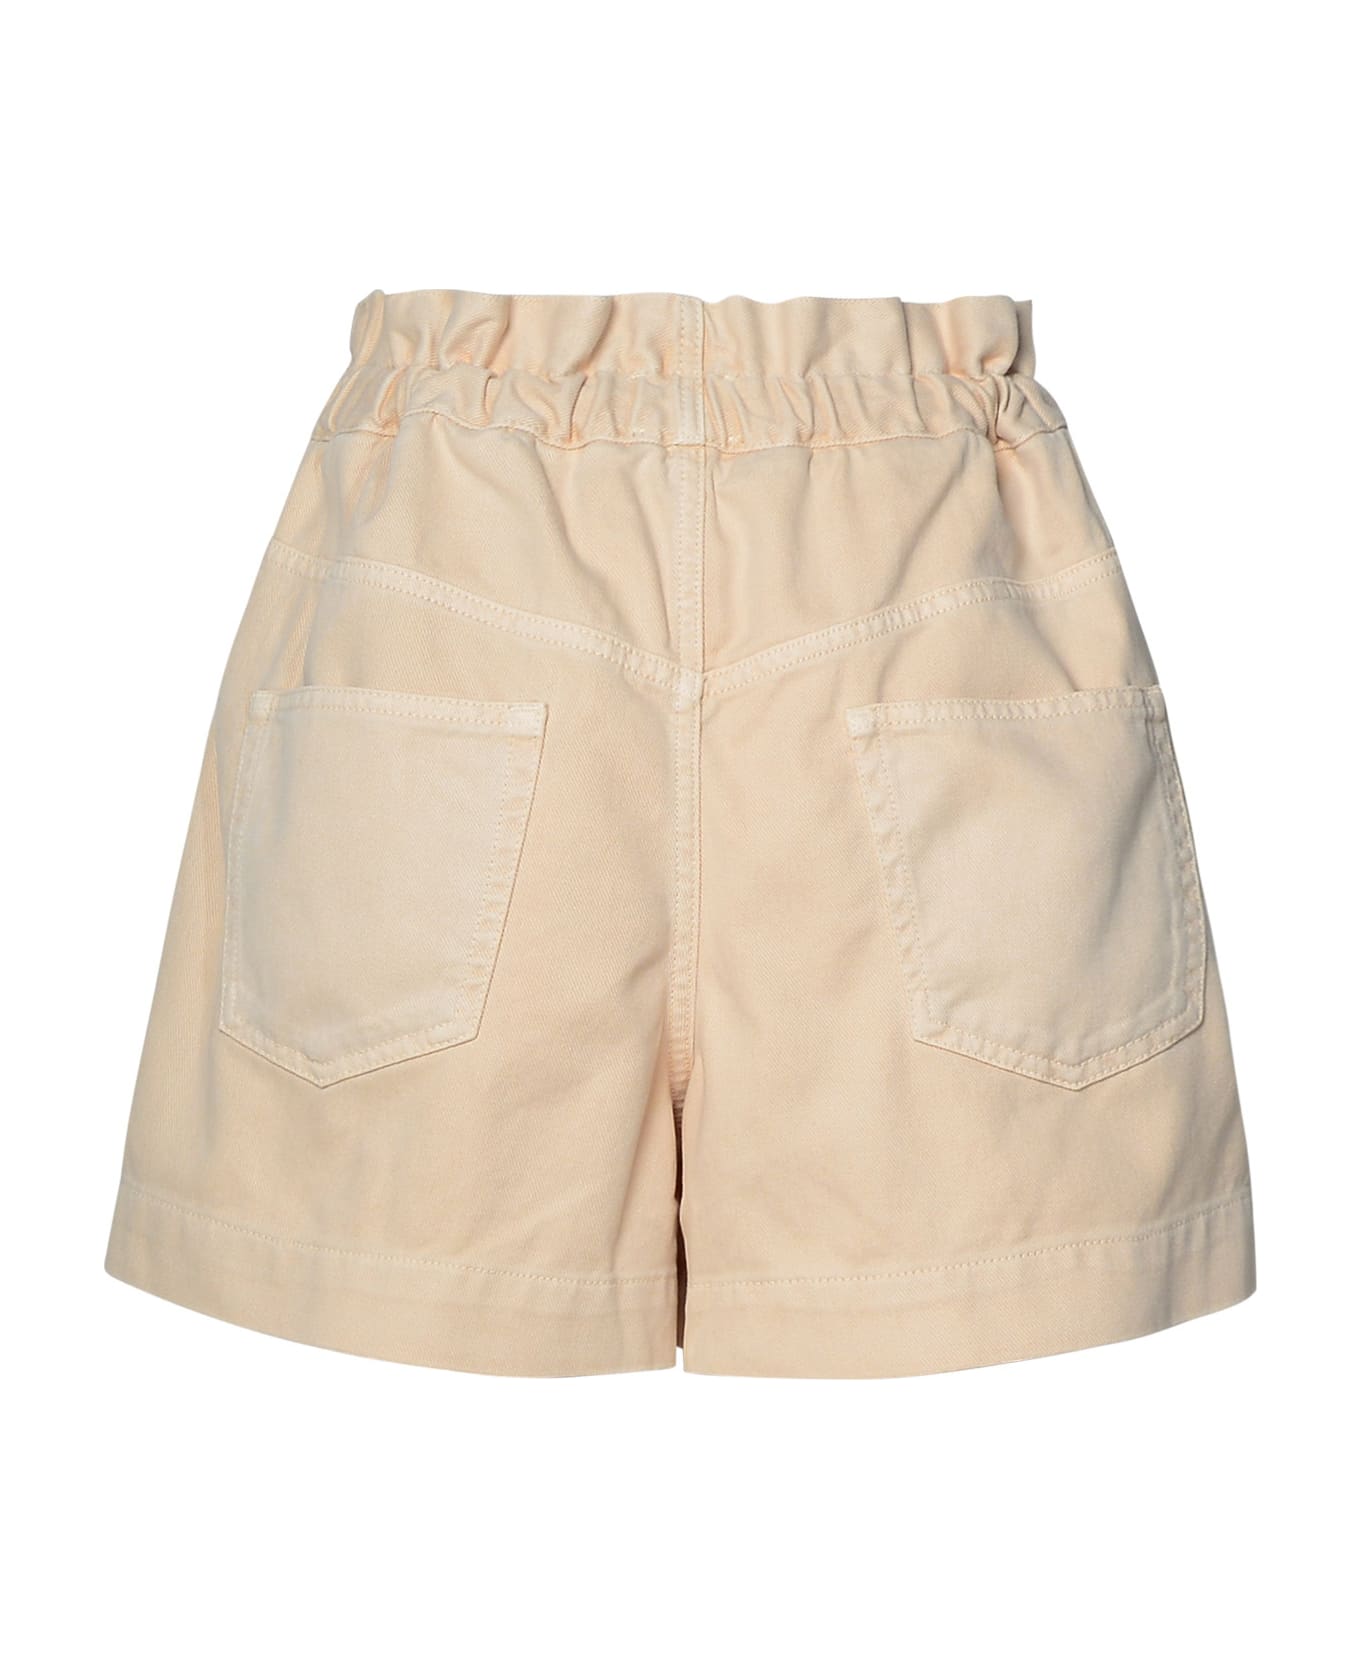 Marant Étoile 'titea' Shorts In Beige Cotton Blend - Ec Ecru